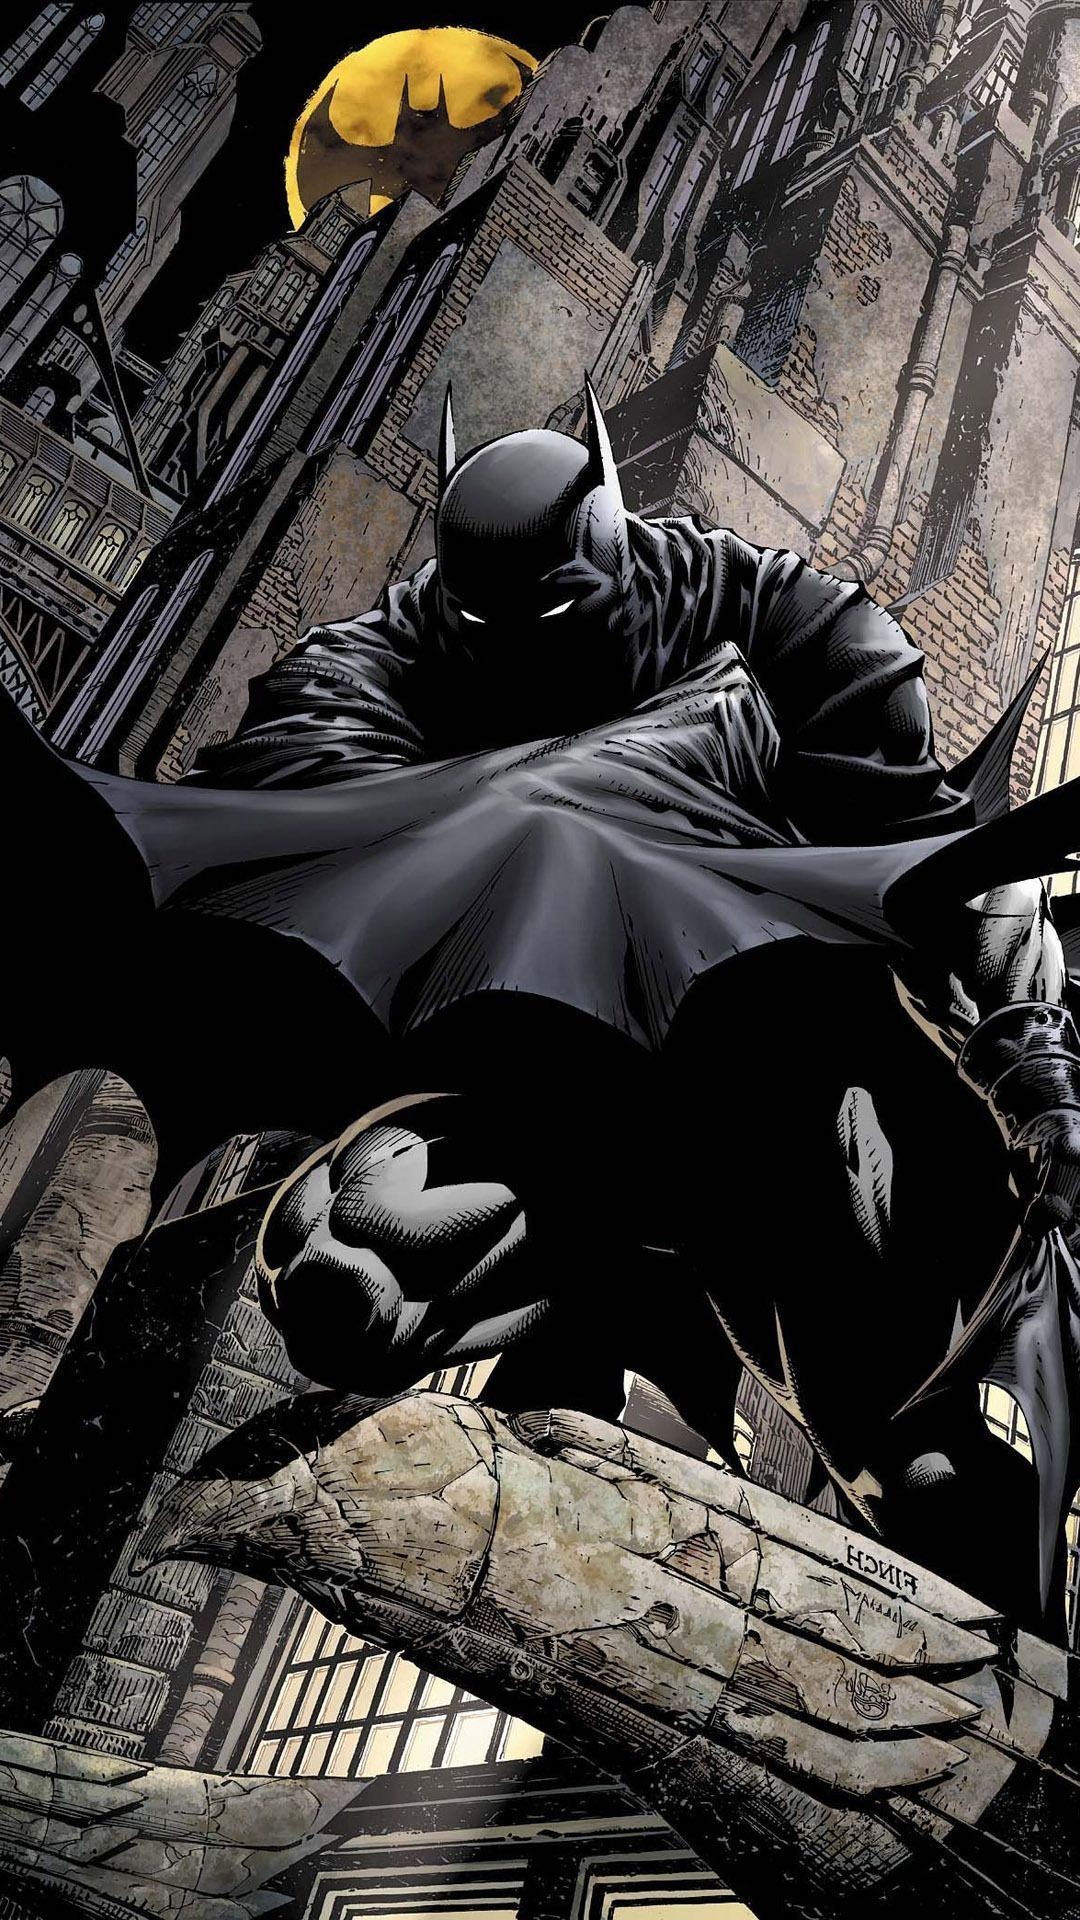 batman phone wallpaper,batman,fictional character,superhero,justice league,cg artwork